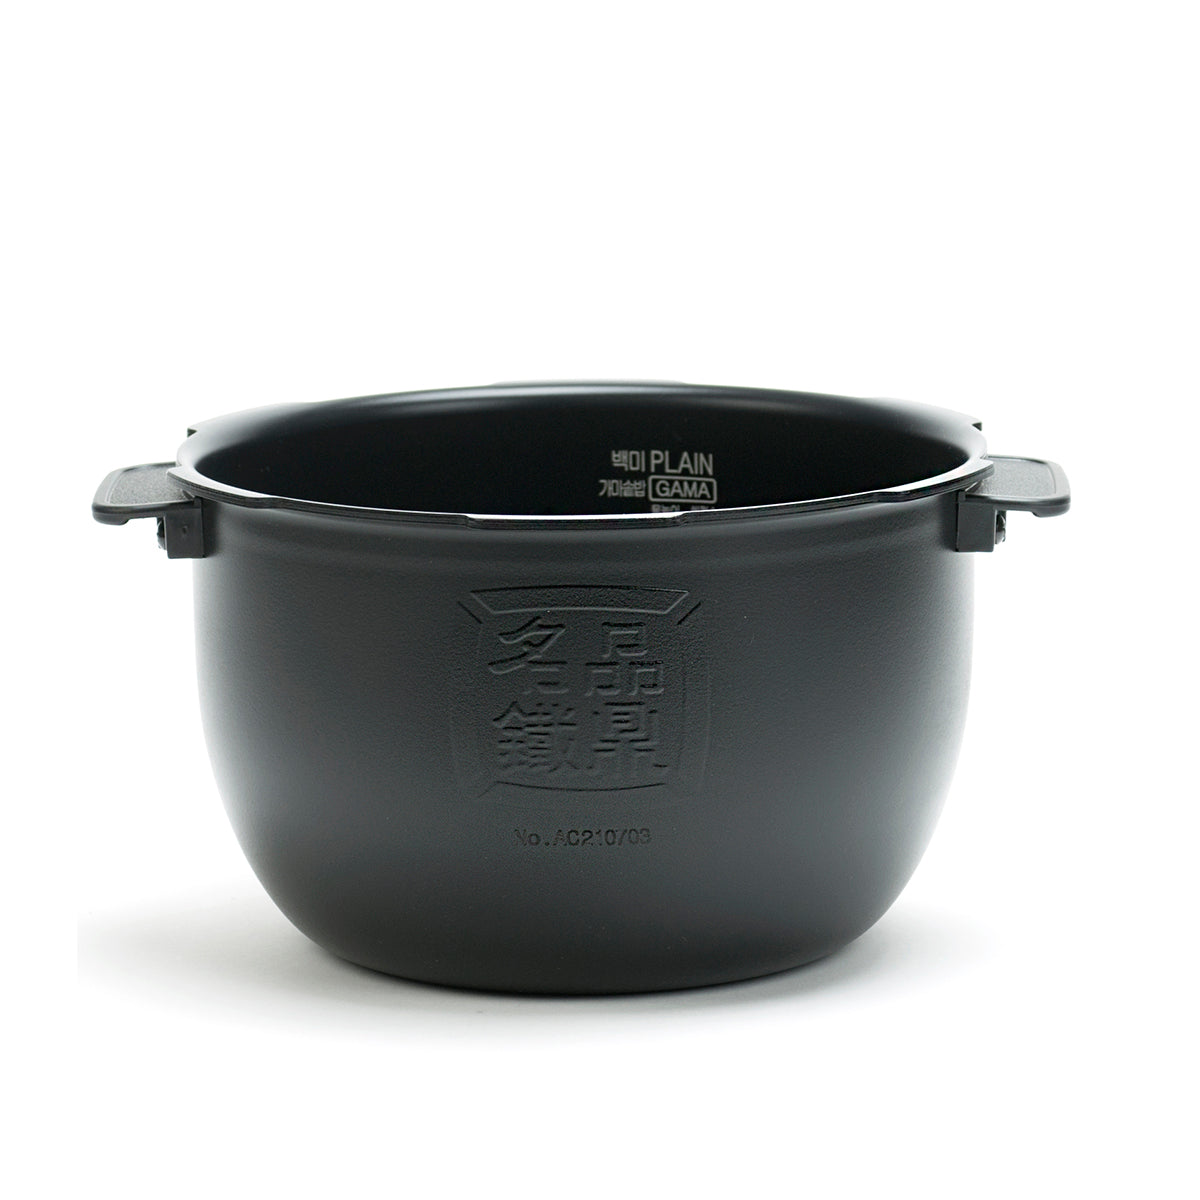 Cuchen Inner Pot for Rice Cooker CJH-PA1002iC (10-Cup) - Cuchen US